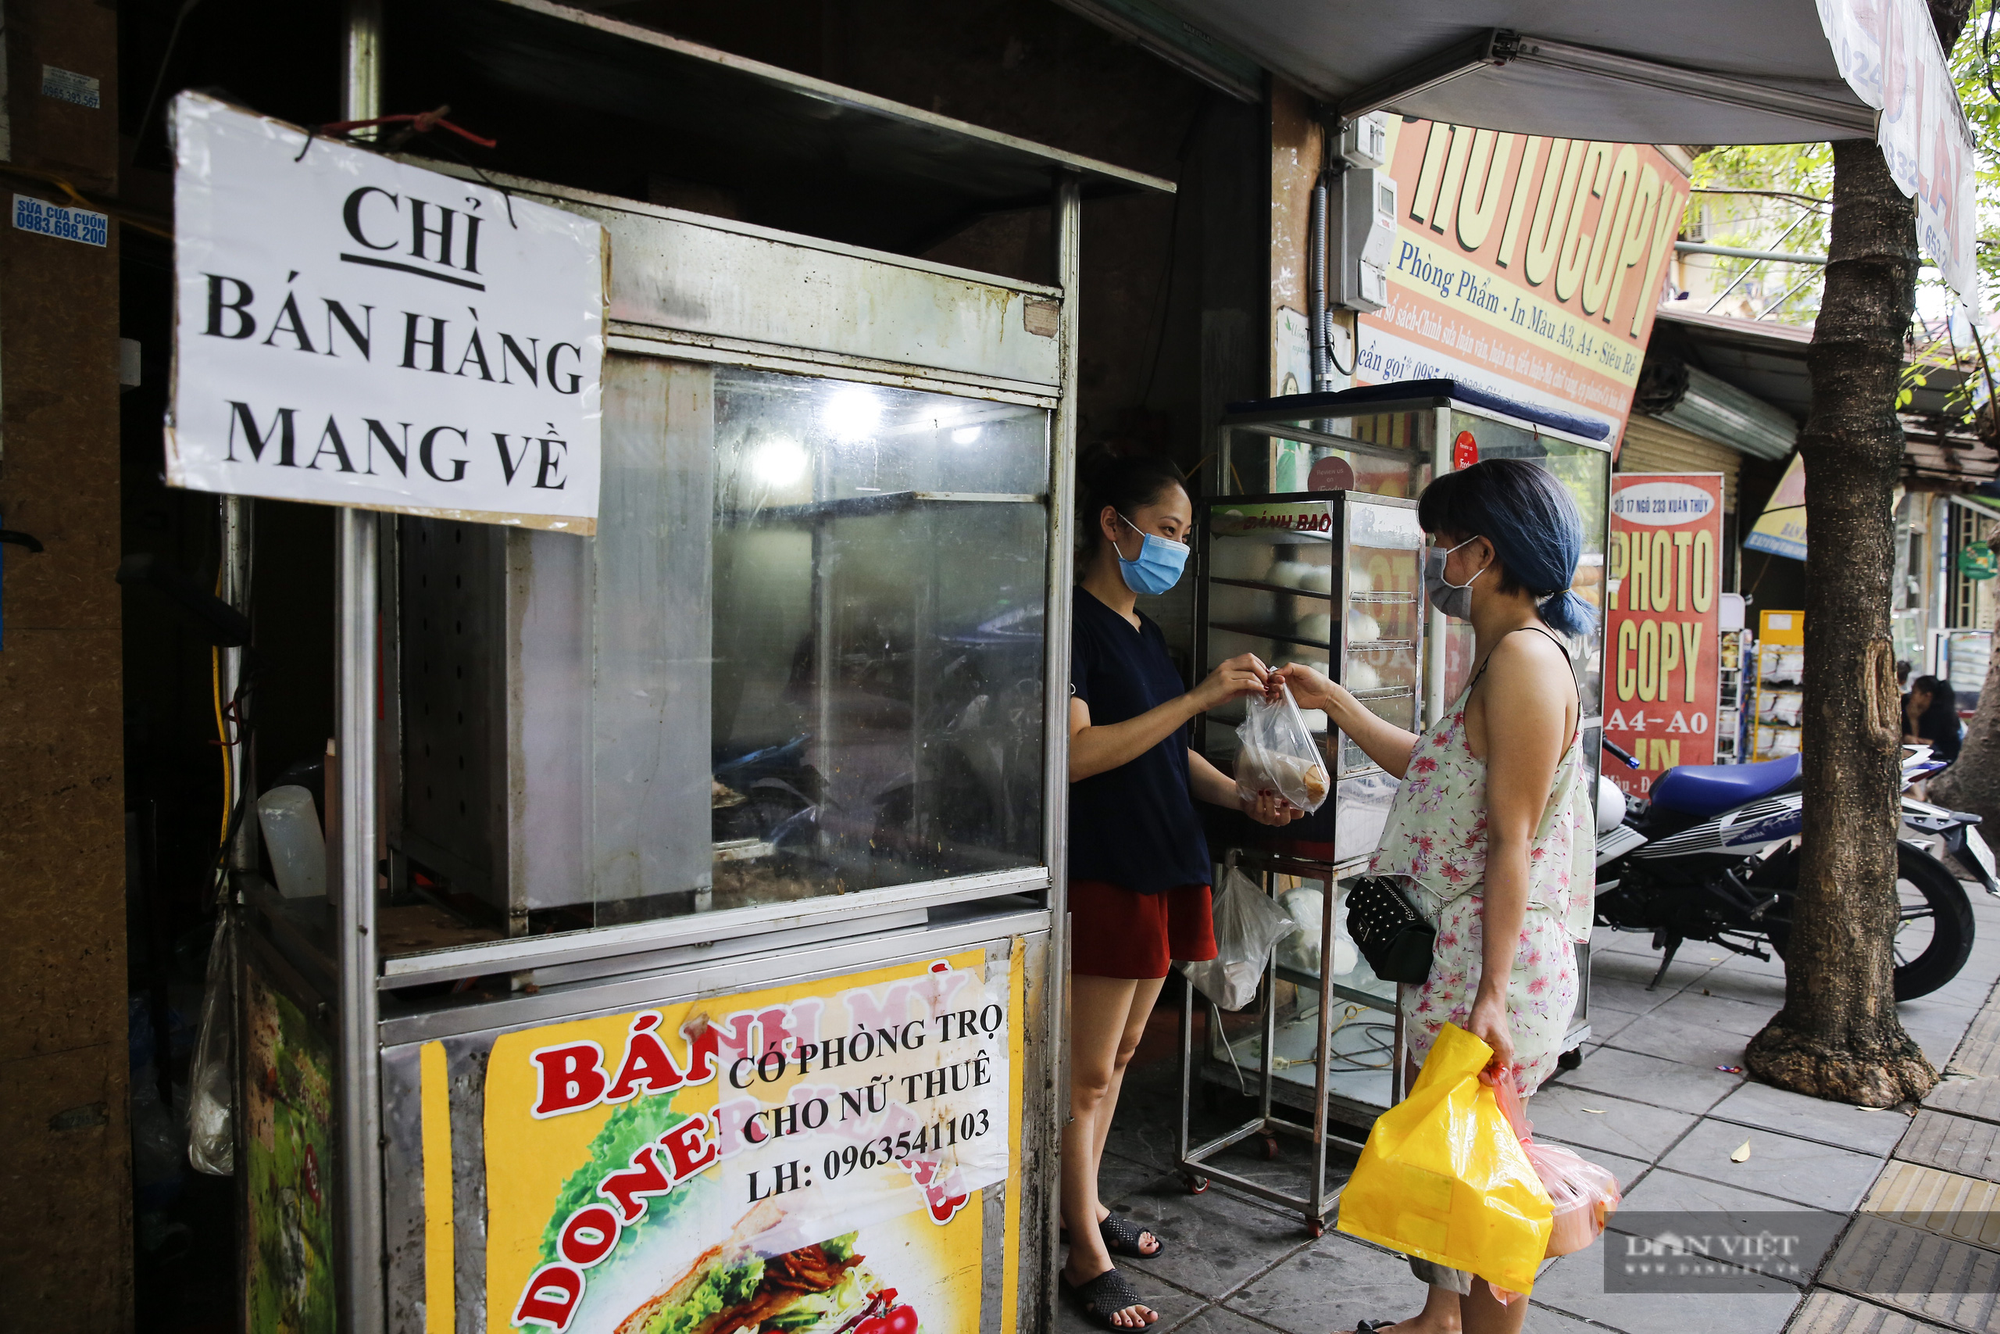 Nóng: Một quận lõi ở Hà Nội dừng bán hàng ăn tại chỗ, vận động người dân hạn chế ra đường - Ảnh 1.